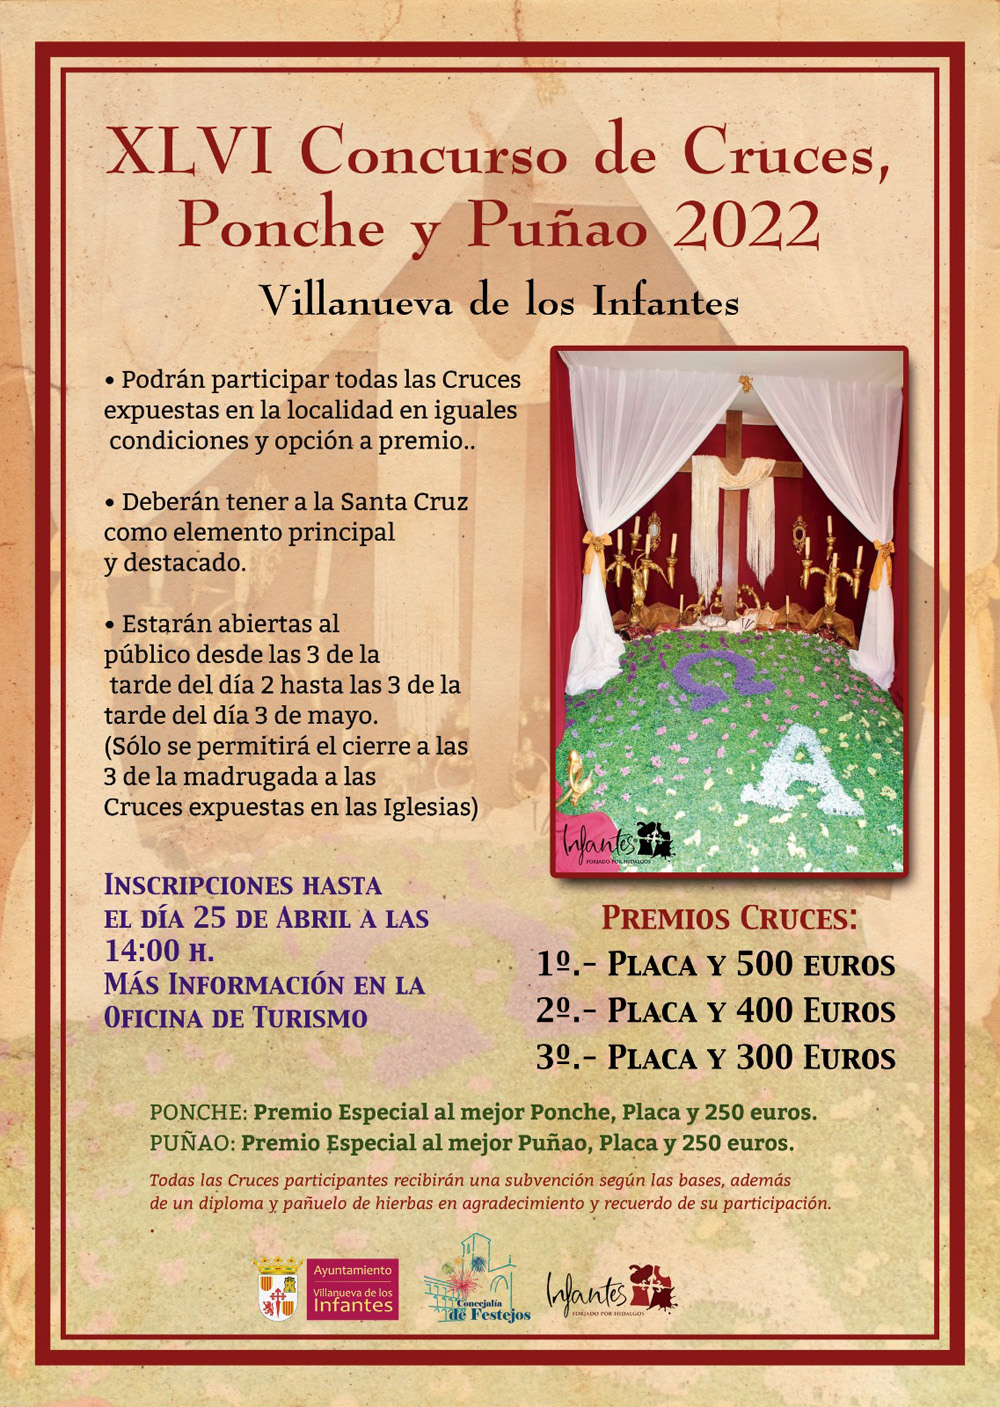 XLVI Concurso de Cruces, Ponche y Puñao , Villanueva de los Infantes 2022